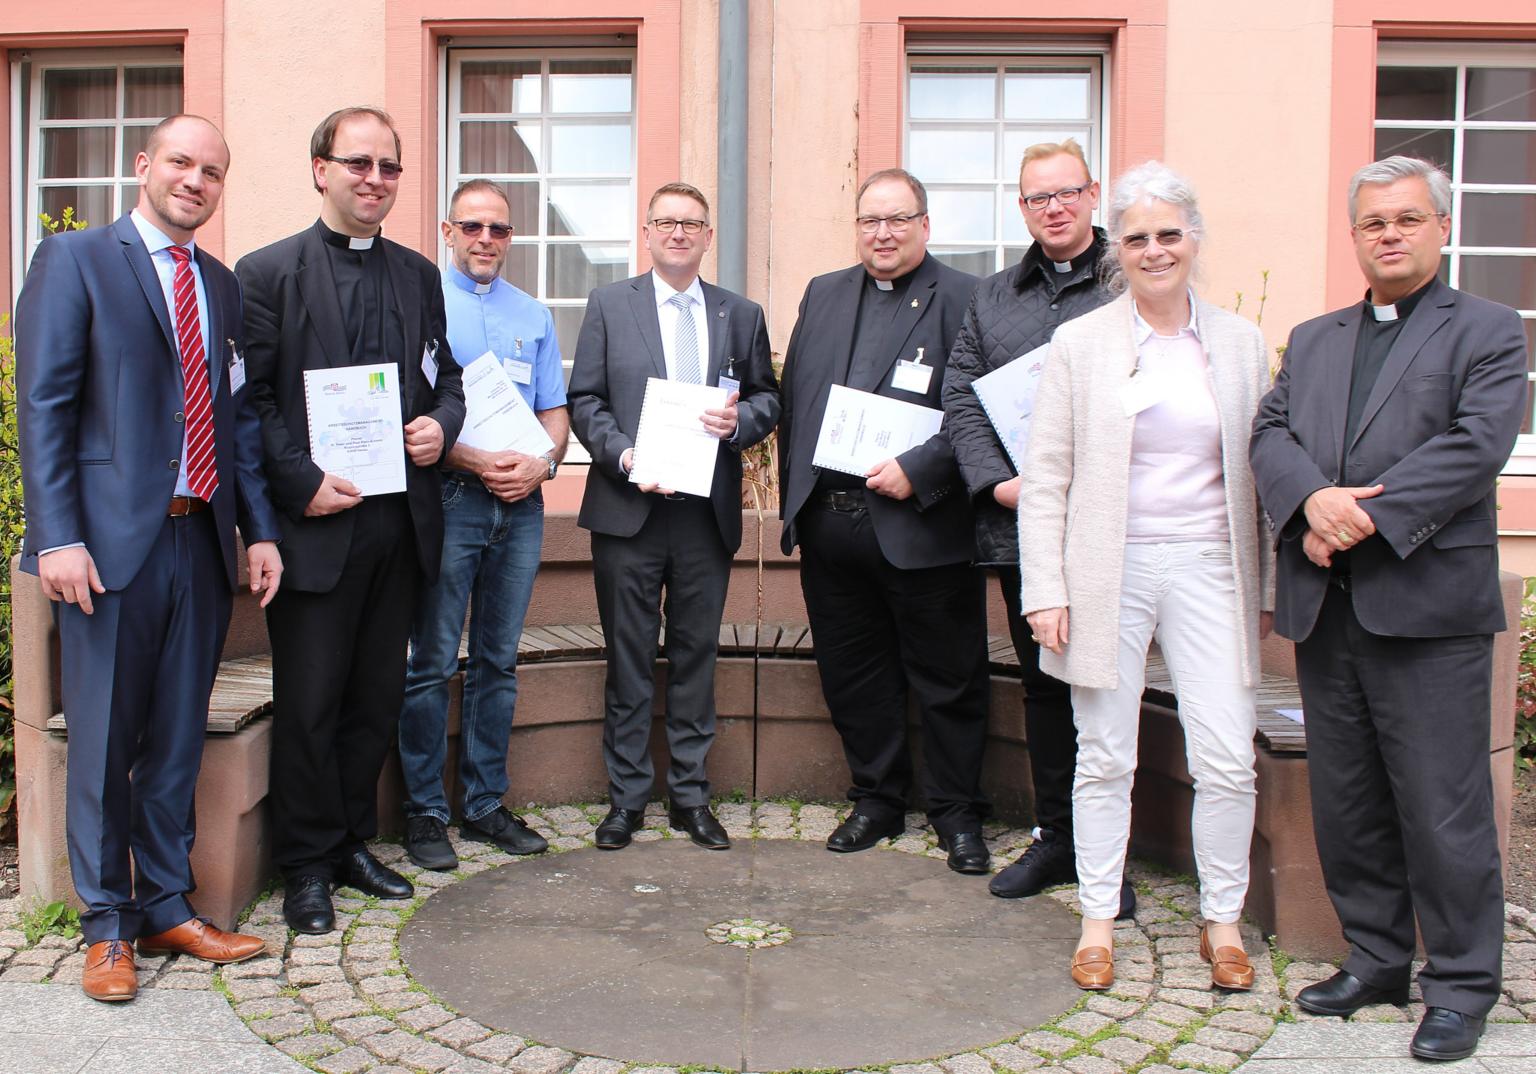 Mainz, 17. april 2019: Als erste Pfarreien in Deutschland haben fünf Kirchengemeinden im Bistum Mainz die Sicherheit und die Gesundheit für ihre haupt- und ehrenamtlich Beschäftigten mit einem Arbeitsschutzmanagementsystem (AMS) organisiert. (c) Bistum Mainz / Blum